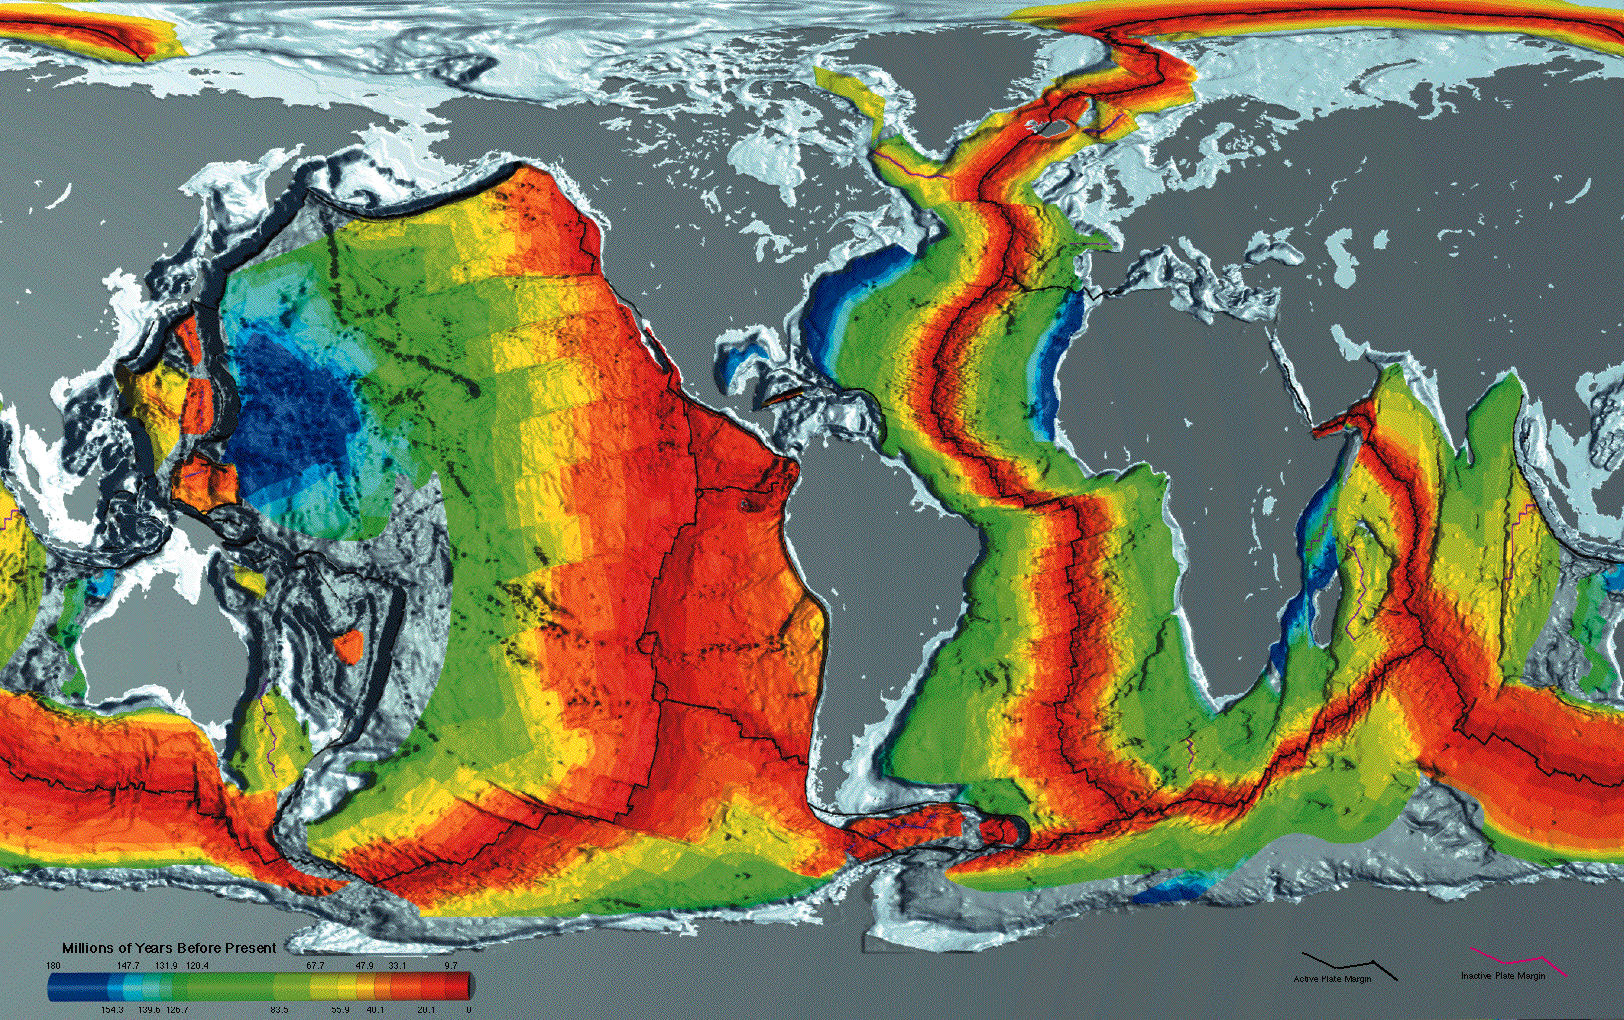 Âge de la croûte océanique en millions d'années avant le présent. Les zones bleues foncées sont les endroits où la croûte océanique est vieille de 100 millions d'années. En rouge, les plus jeunes. La croûte océanique au niveau de la plaque de Juan de Fuca est jeune, elle a 3,5 millions d'années. © NOAA, DP